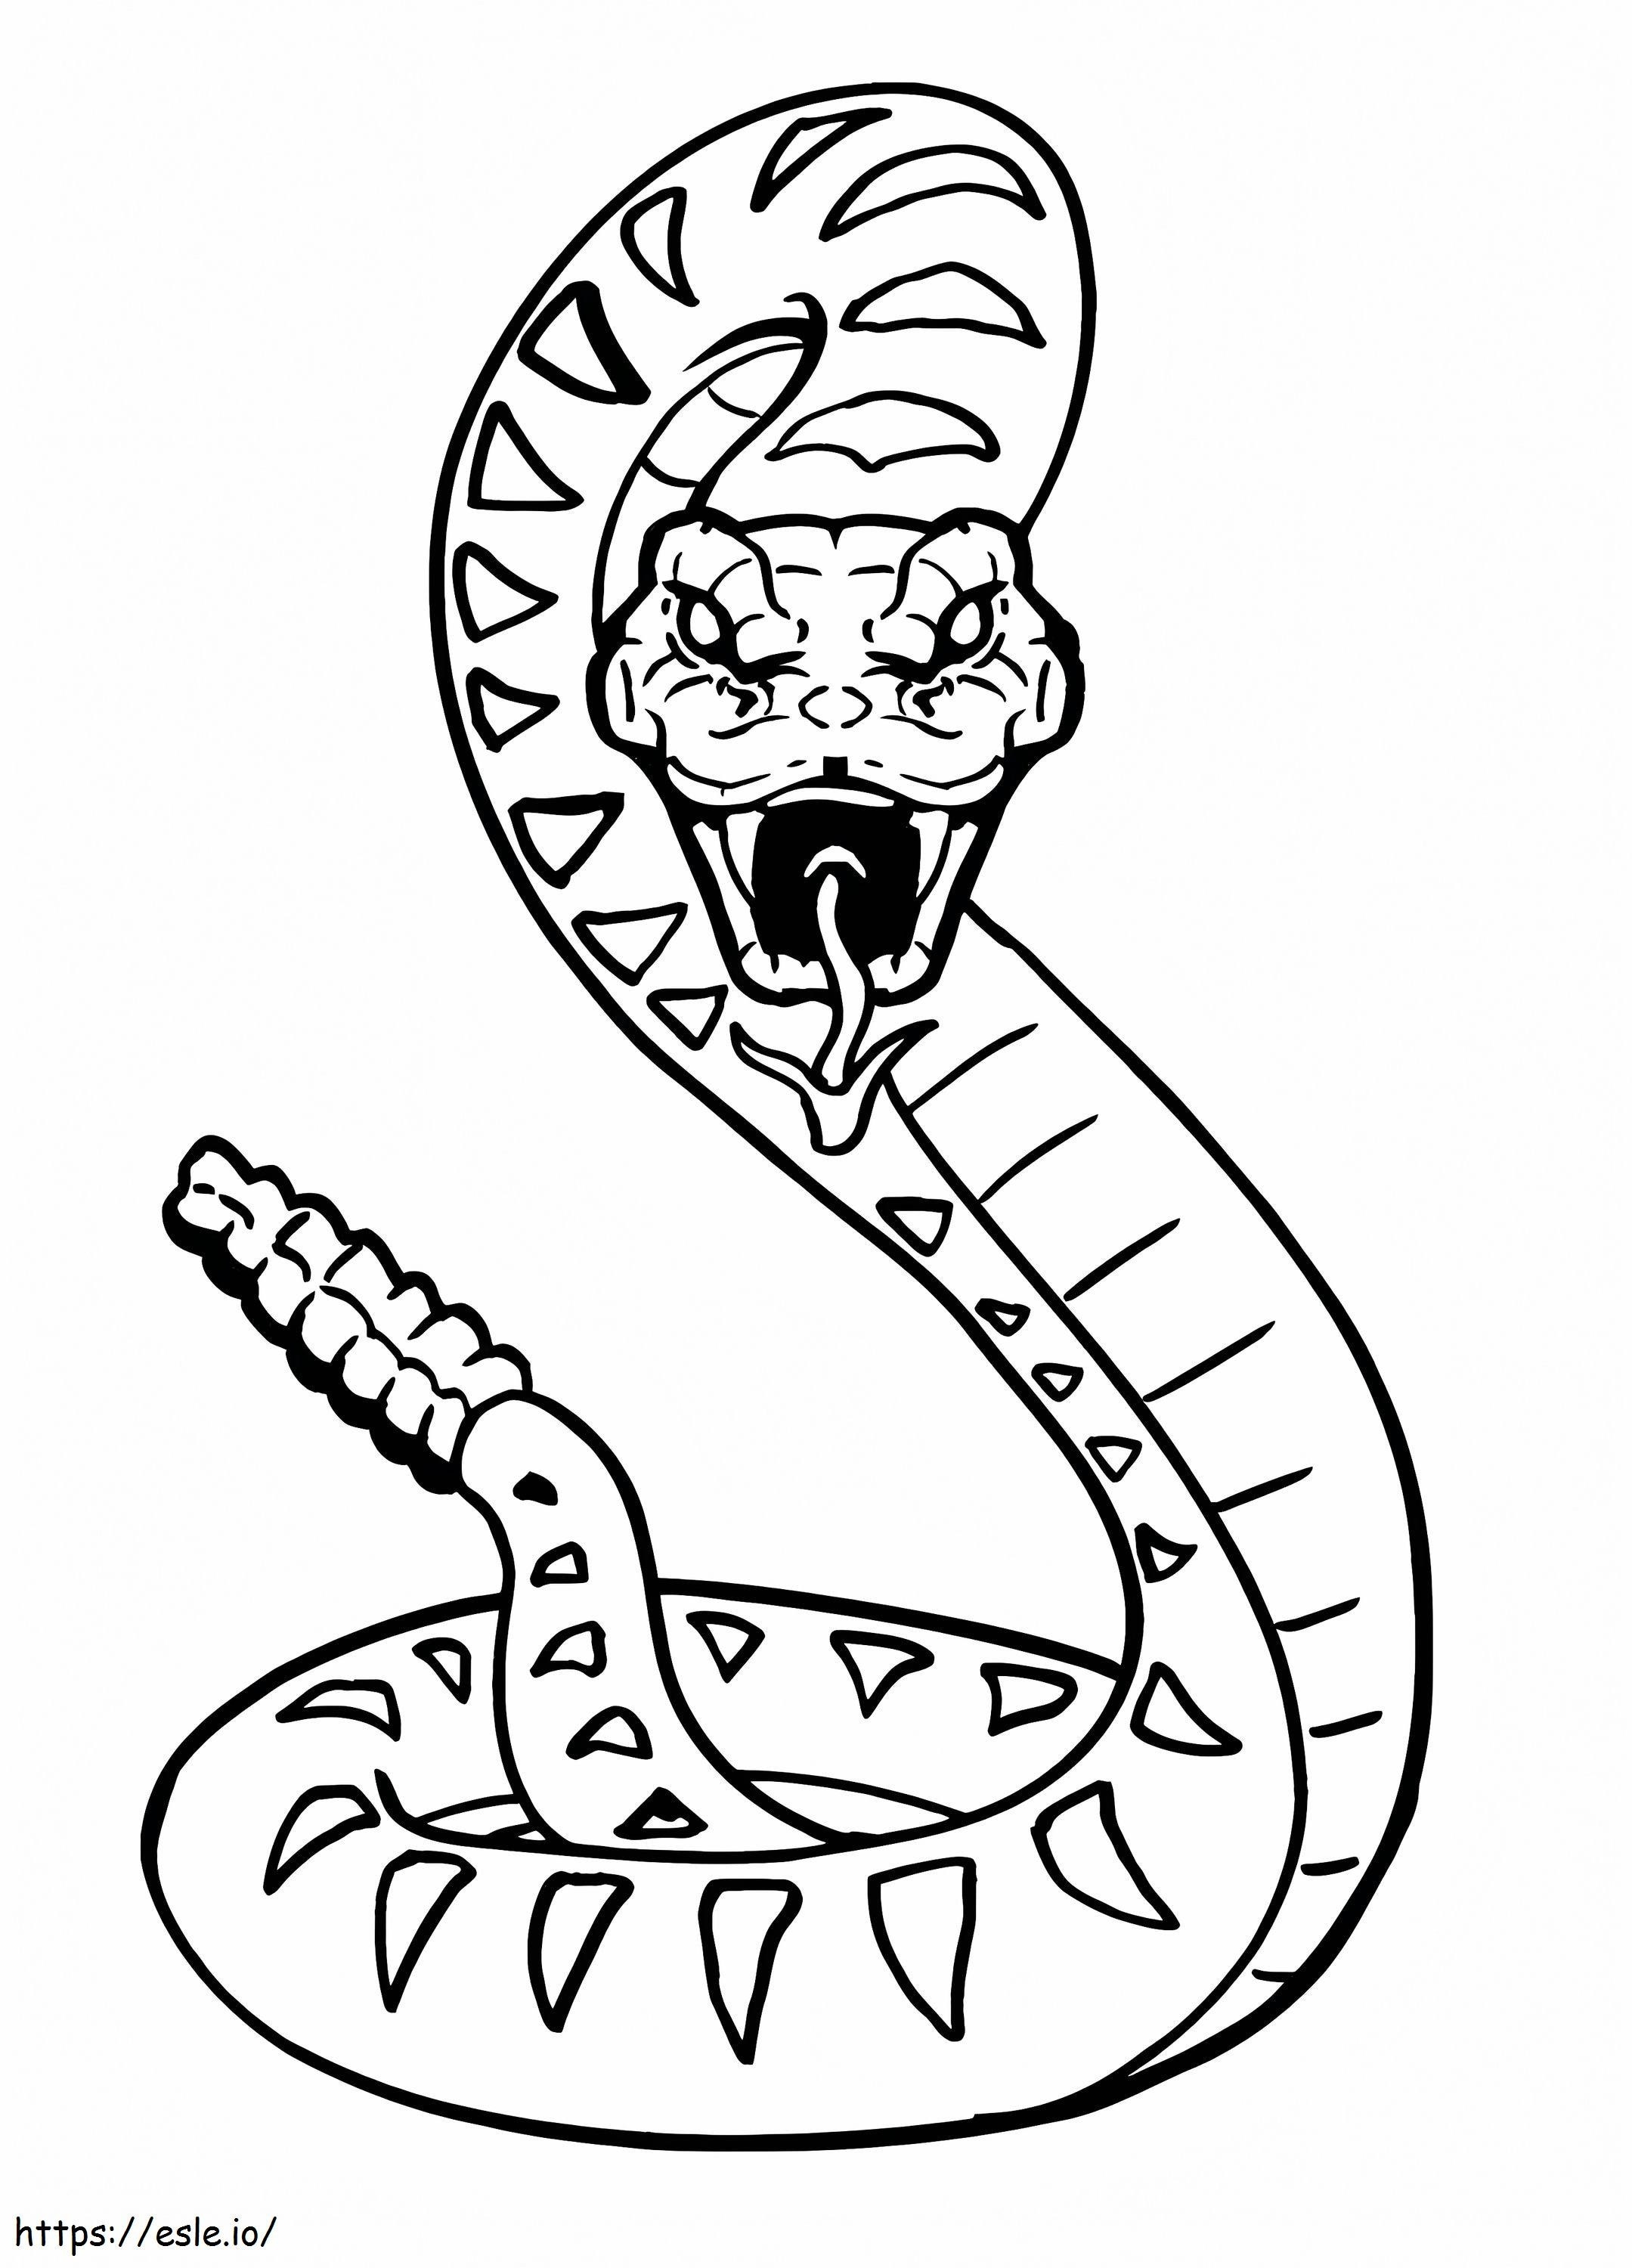 Coloriage  Serpents Serpent Lego Ninjago à imprimer dessin